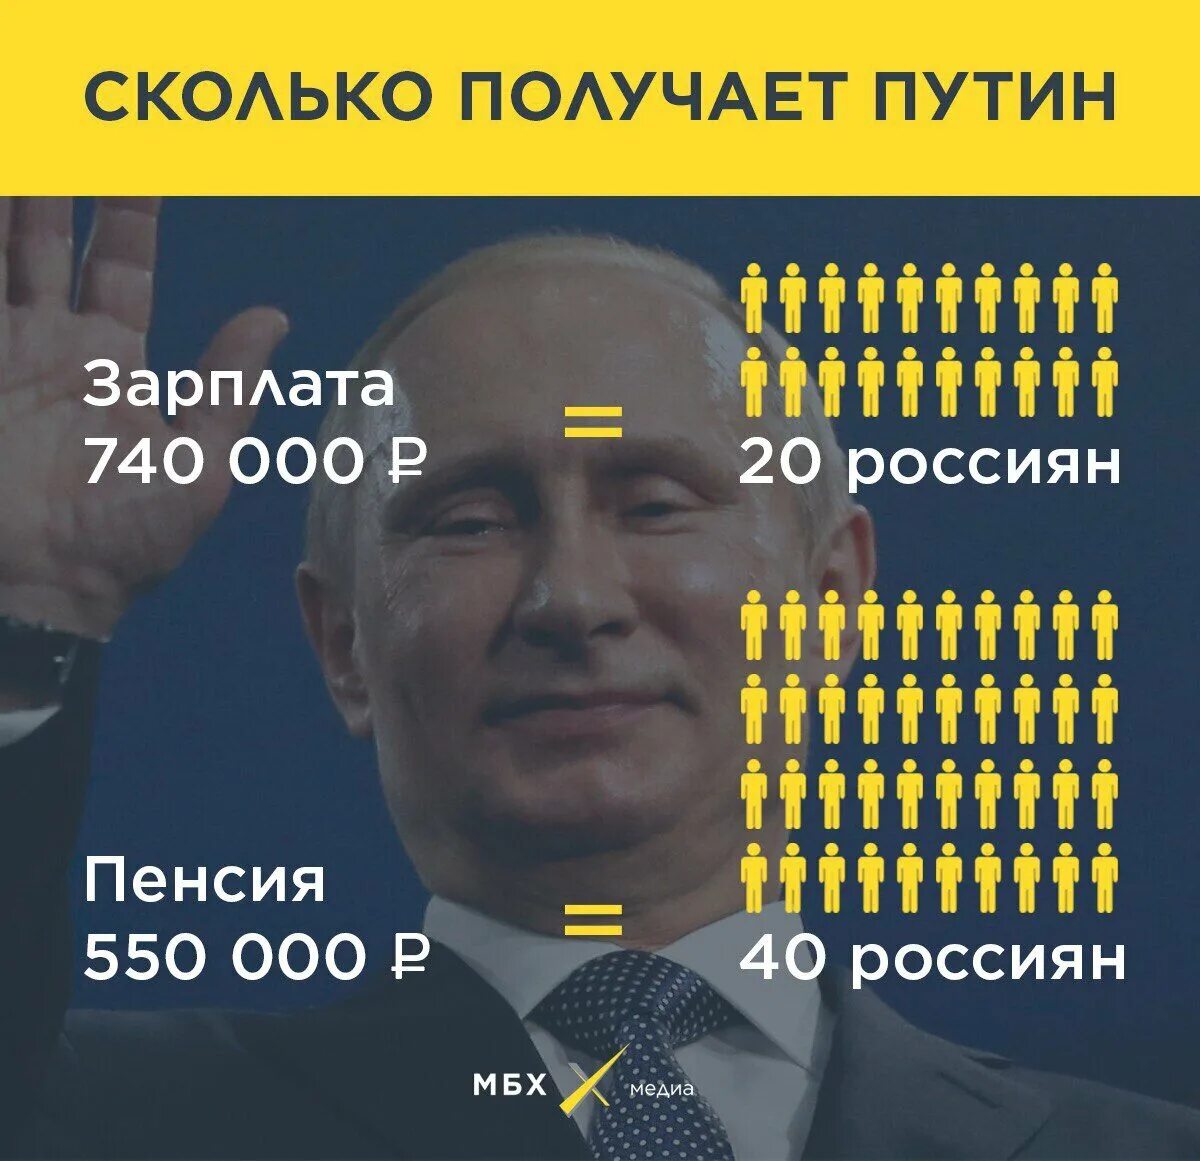 Сколько зарплата получаешь в месяц. Зарплата Путина. Официальная зарплата президента. Сколько зарабатываетпутн.